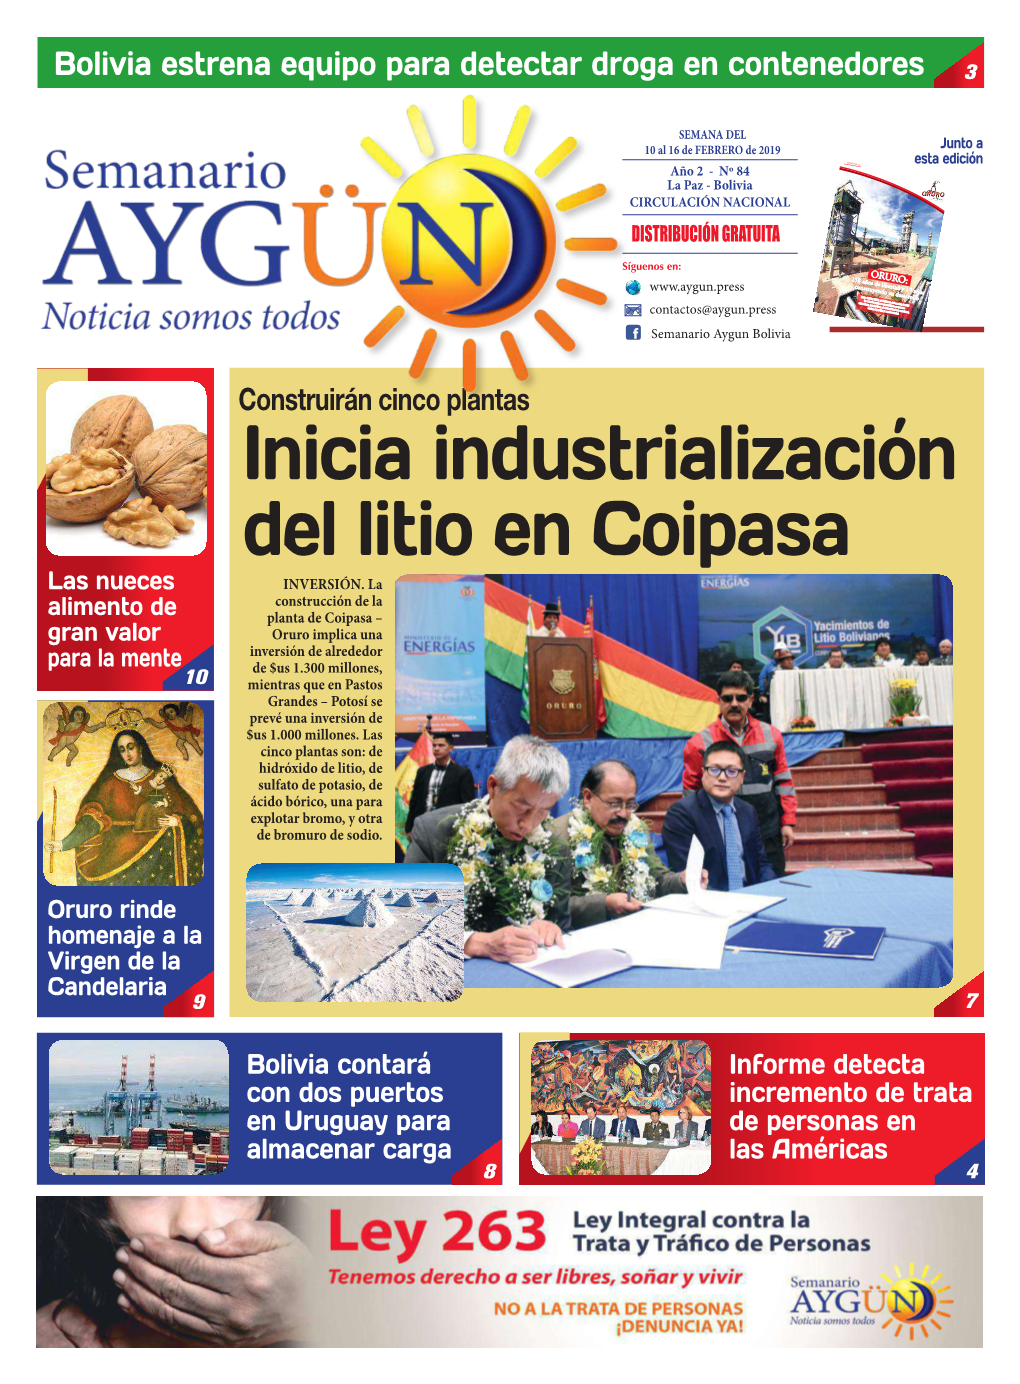 Inicia Industrialización Del Litio En Coipasa Las Nueces INVERSIÓN